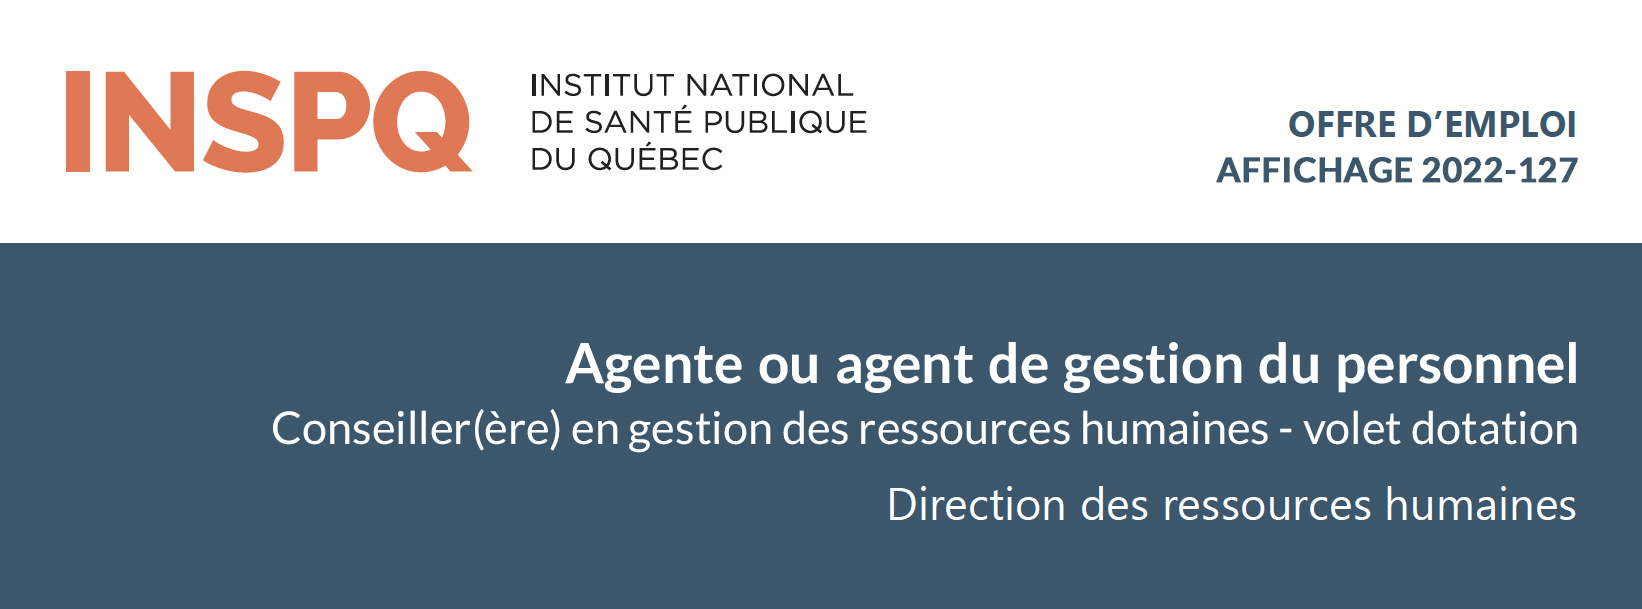 Agente ou agent de gestion du personnel - Conseiller(ère) en gestion des ressources humaines - volet dotation (2022-127)